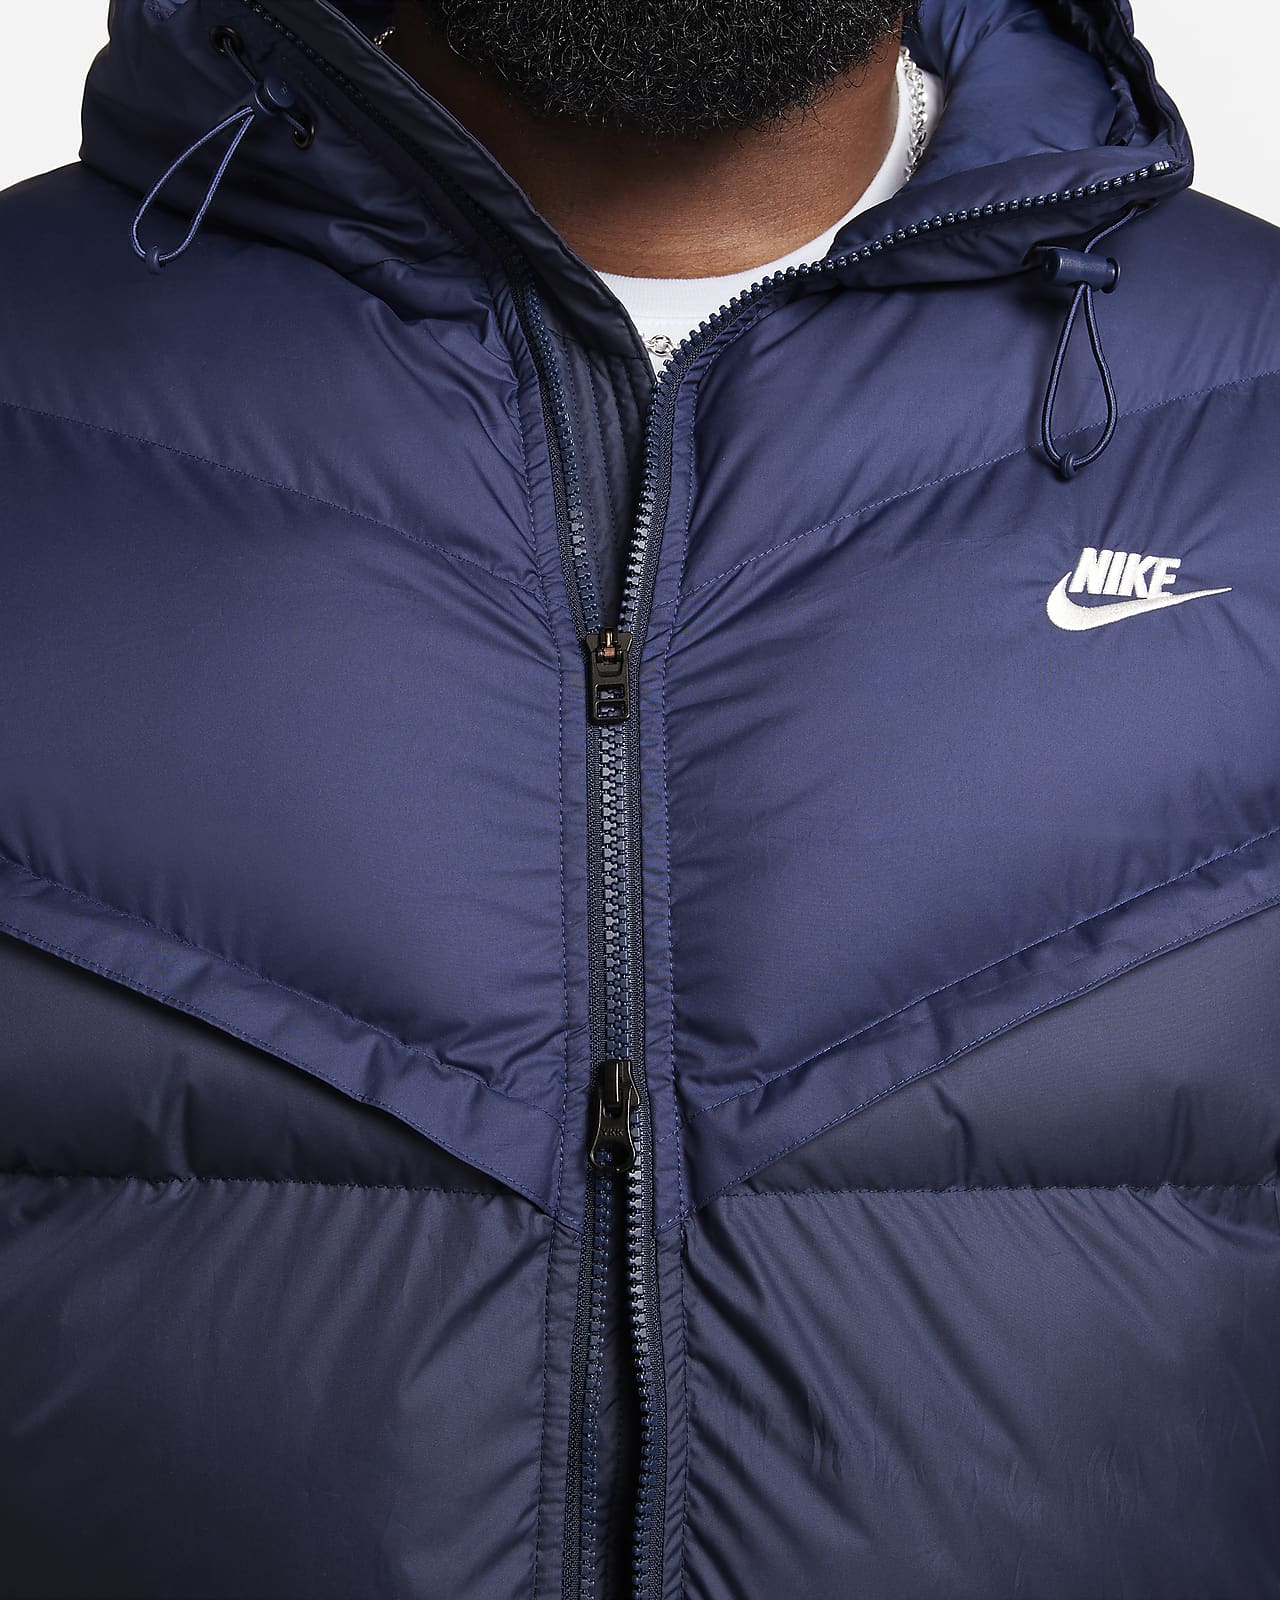 Nike Men's Woven Windrunner Hooded Jacket - Black/Khaki - Hibbett